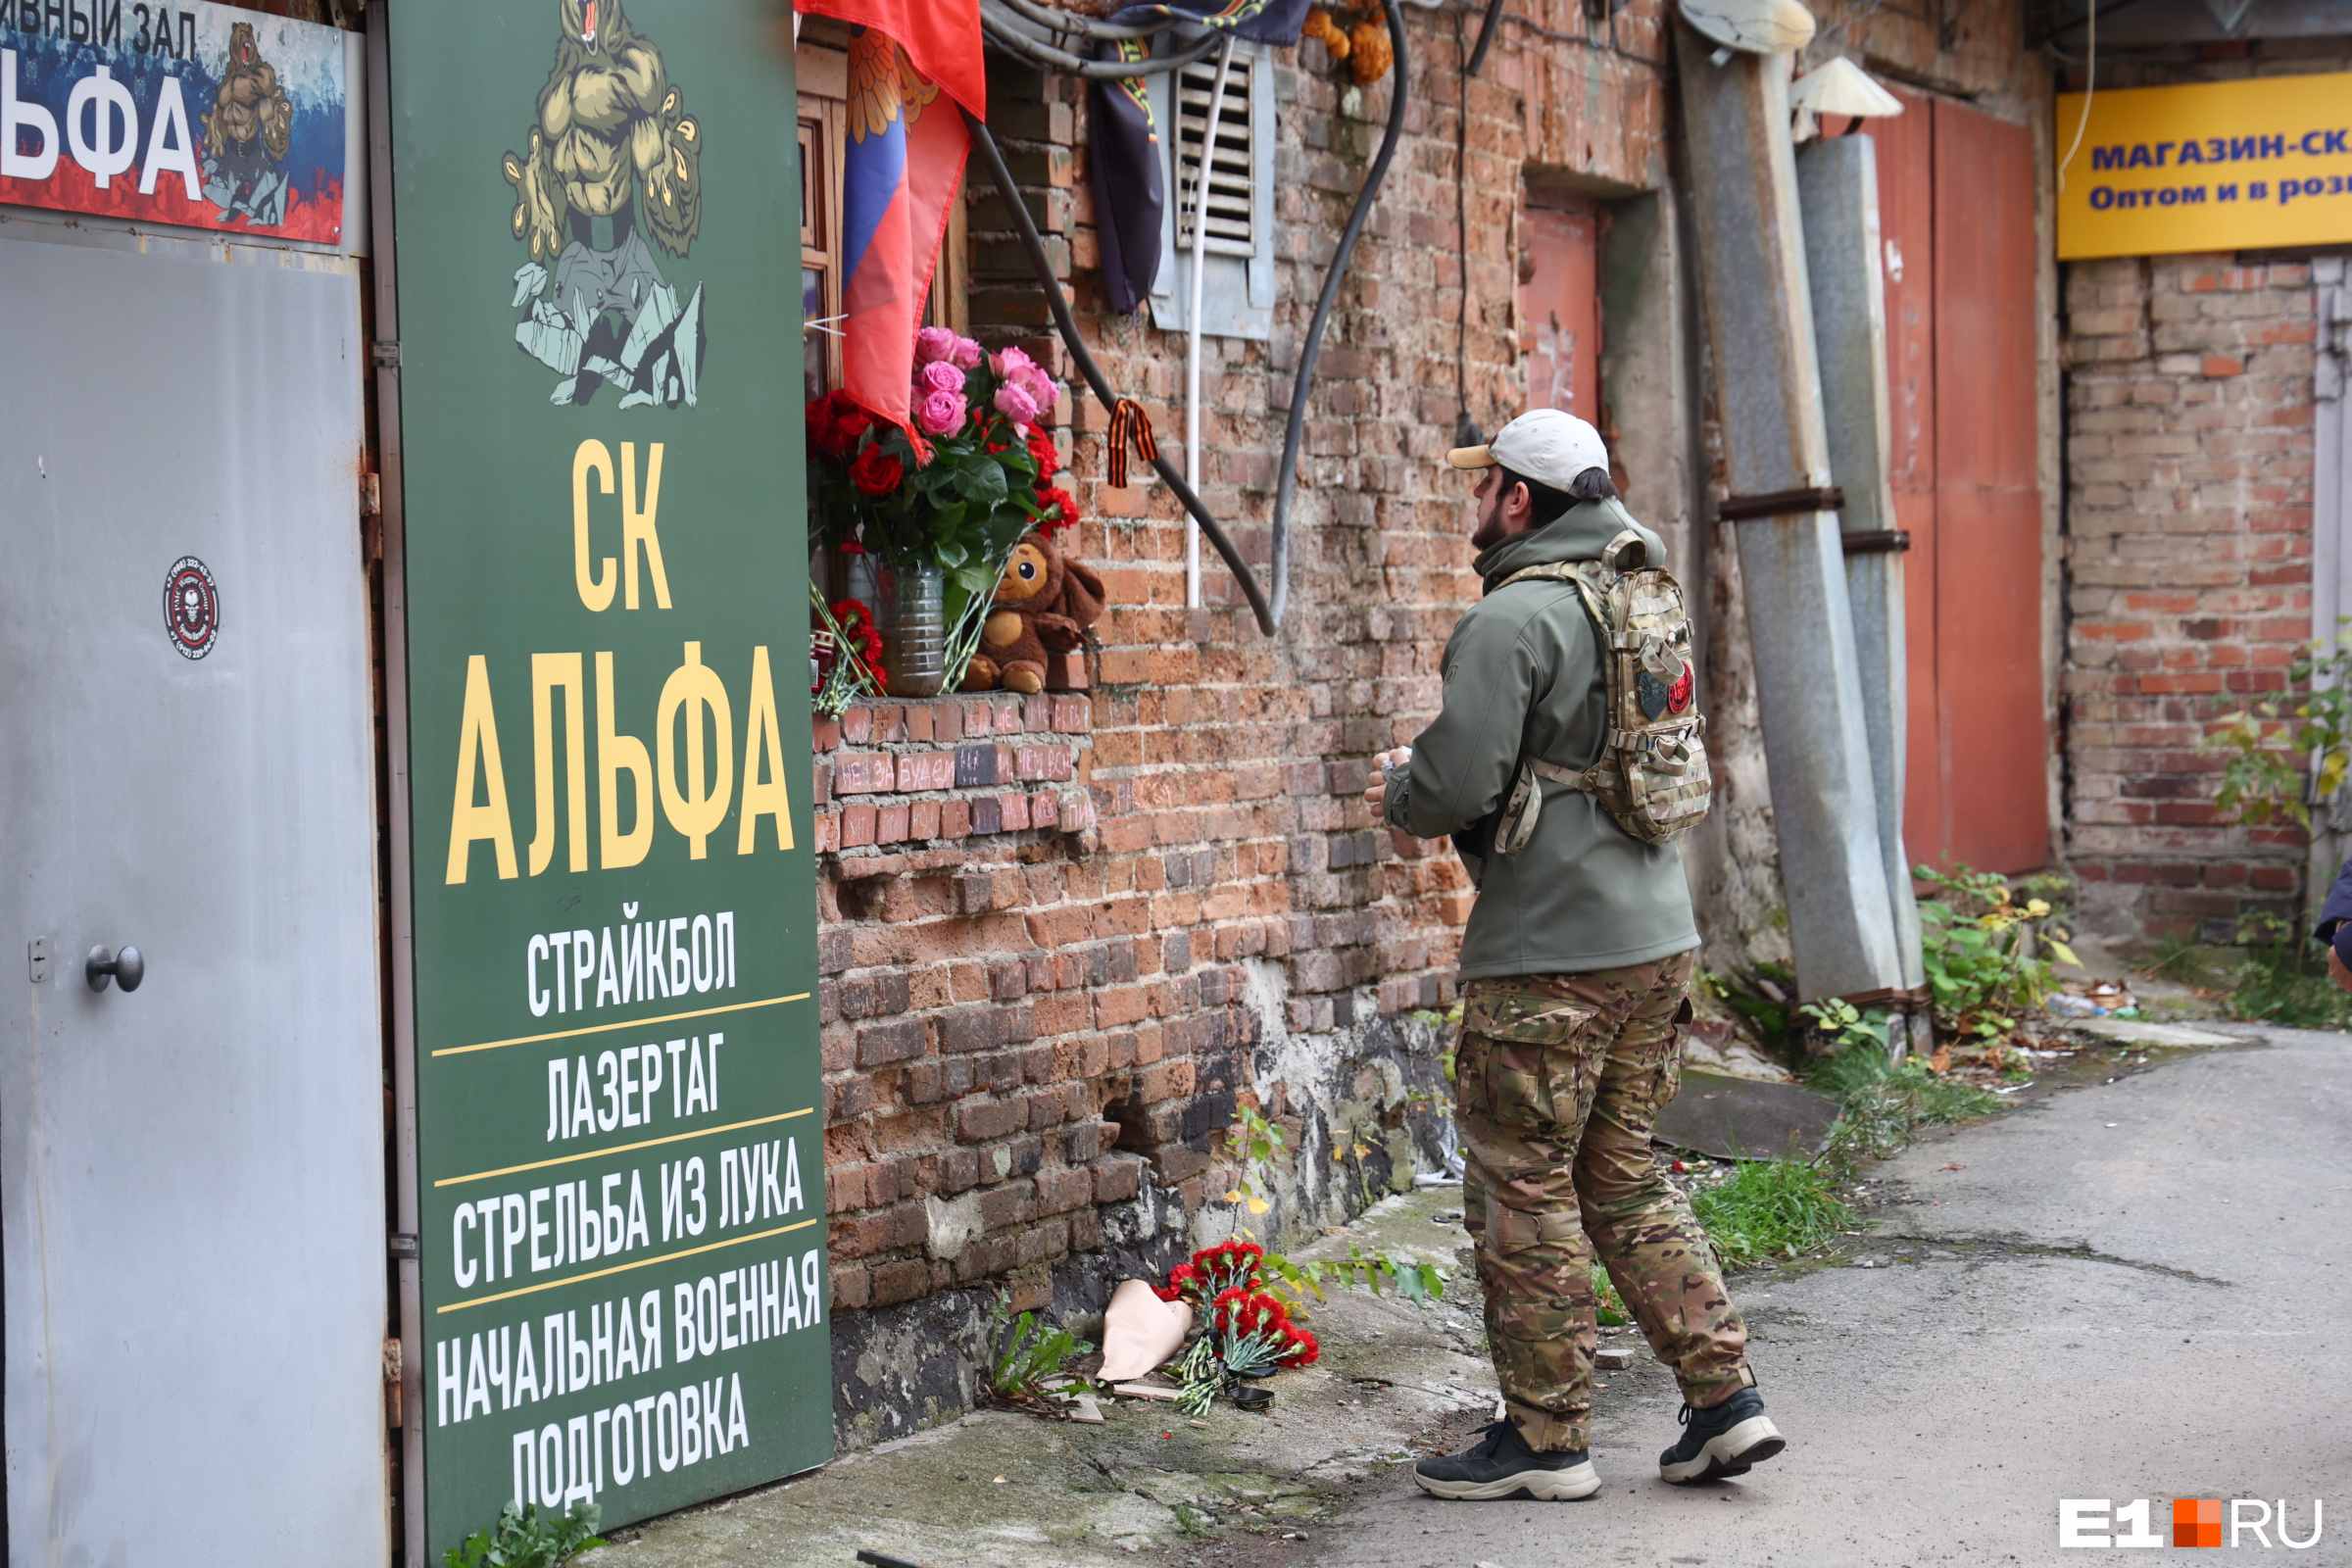 Несут цветы и игрушки. В Екатеринбурге устроили акцию памяти главы ЧВК «Вагнер»